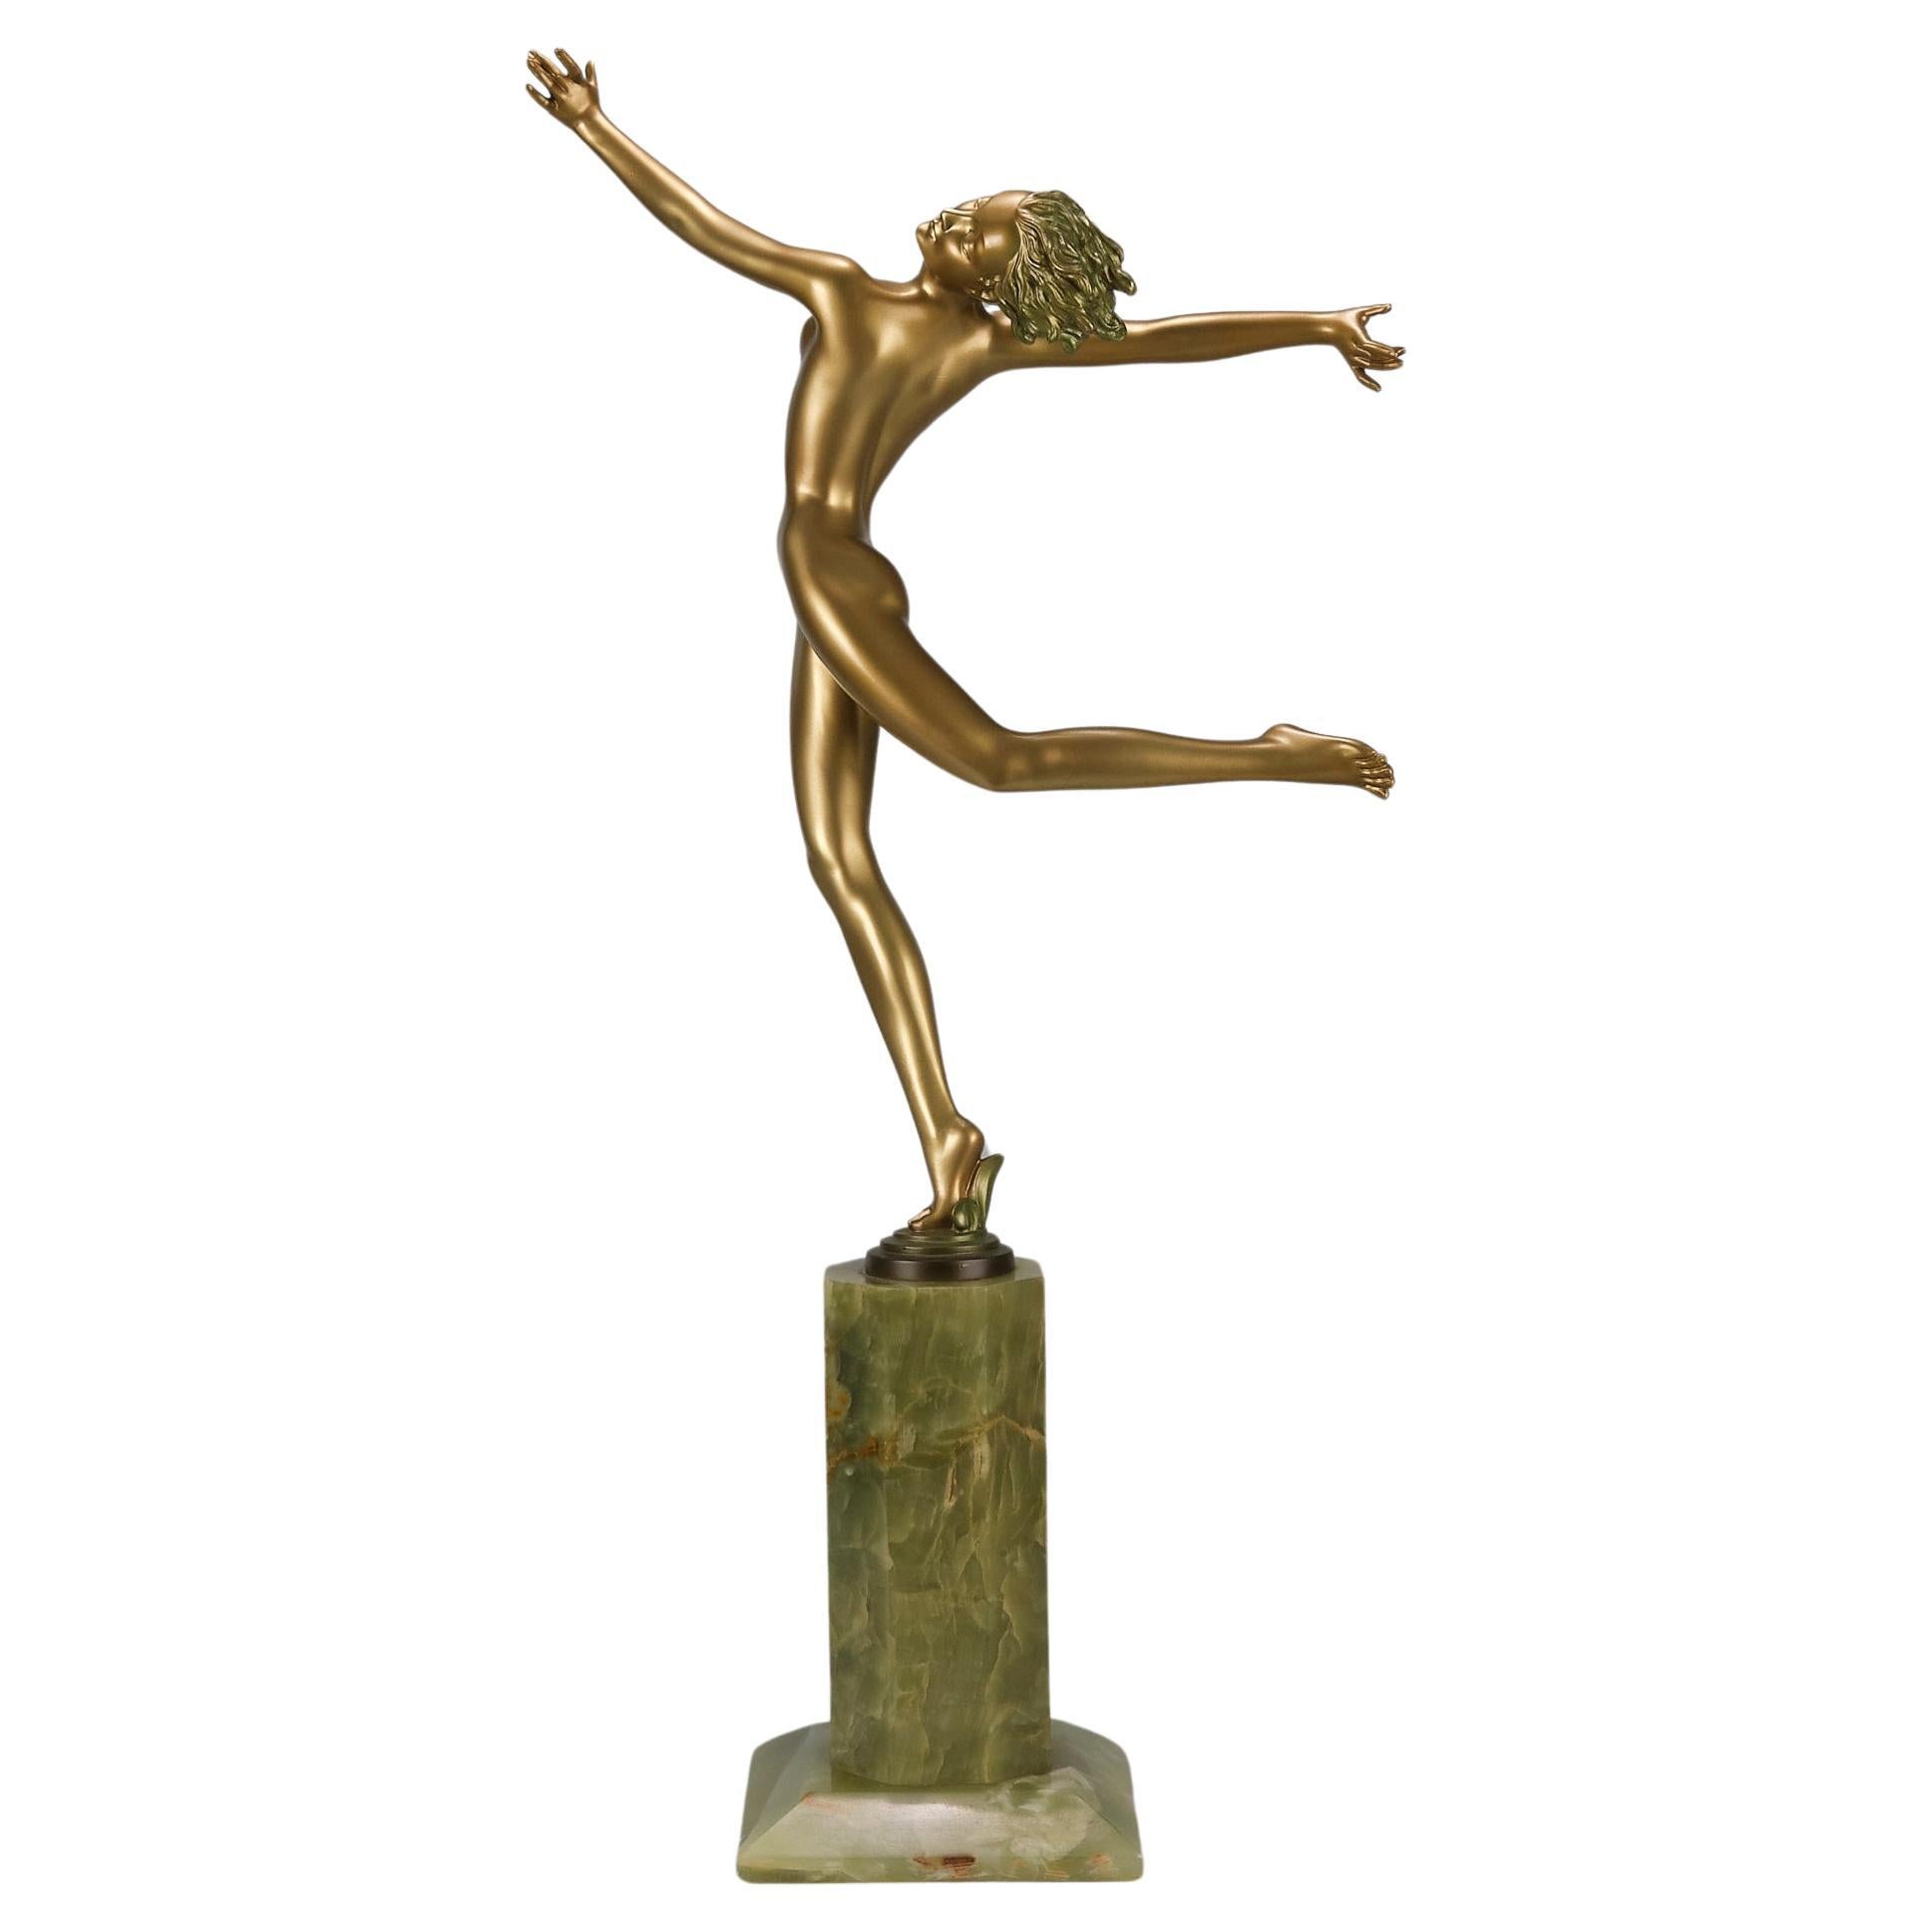 Cold-bemalte Bronzeskulptur „Deco-Tänzer“ aus dem frühen 20. Jahrhundert von Josef Lorenzl